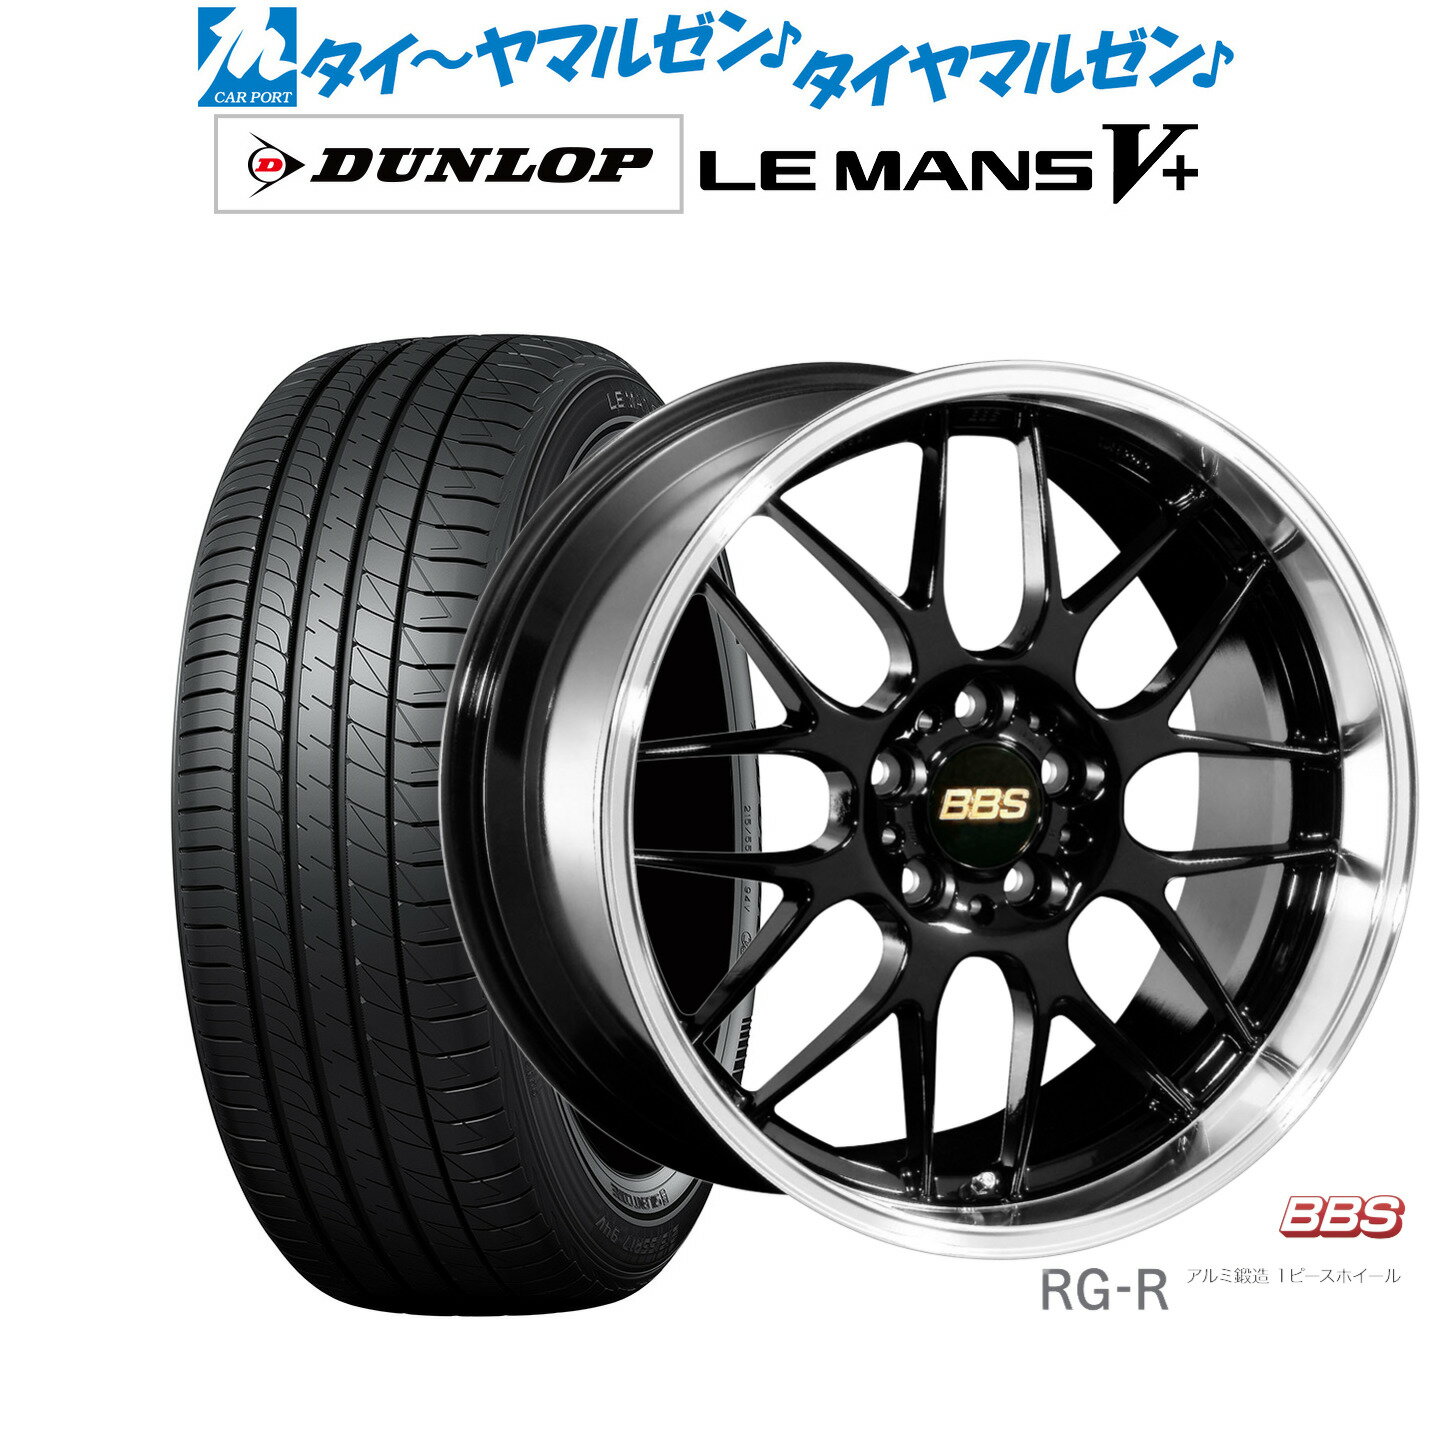 [5/18]ストアポイント3倍!!新品 サマータイヤ ホイール4本セットBBS JAPAN RG-R19インチ 8.0Jダンロップ LEMANS ルマン V+ (ファイブプラス)215/35R19